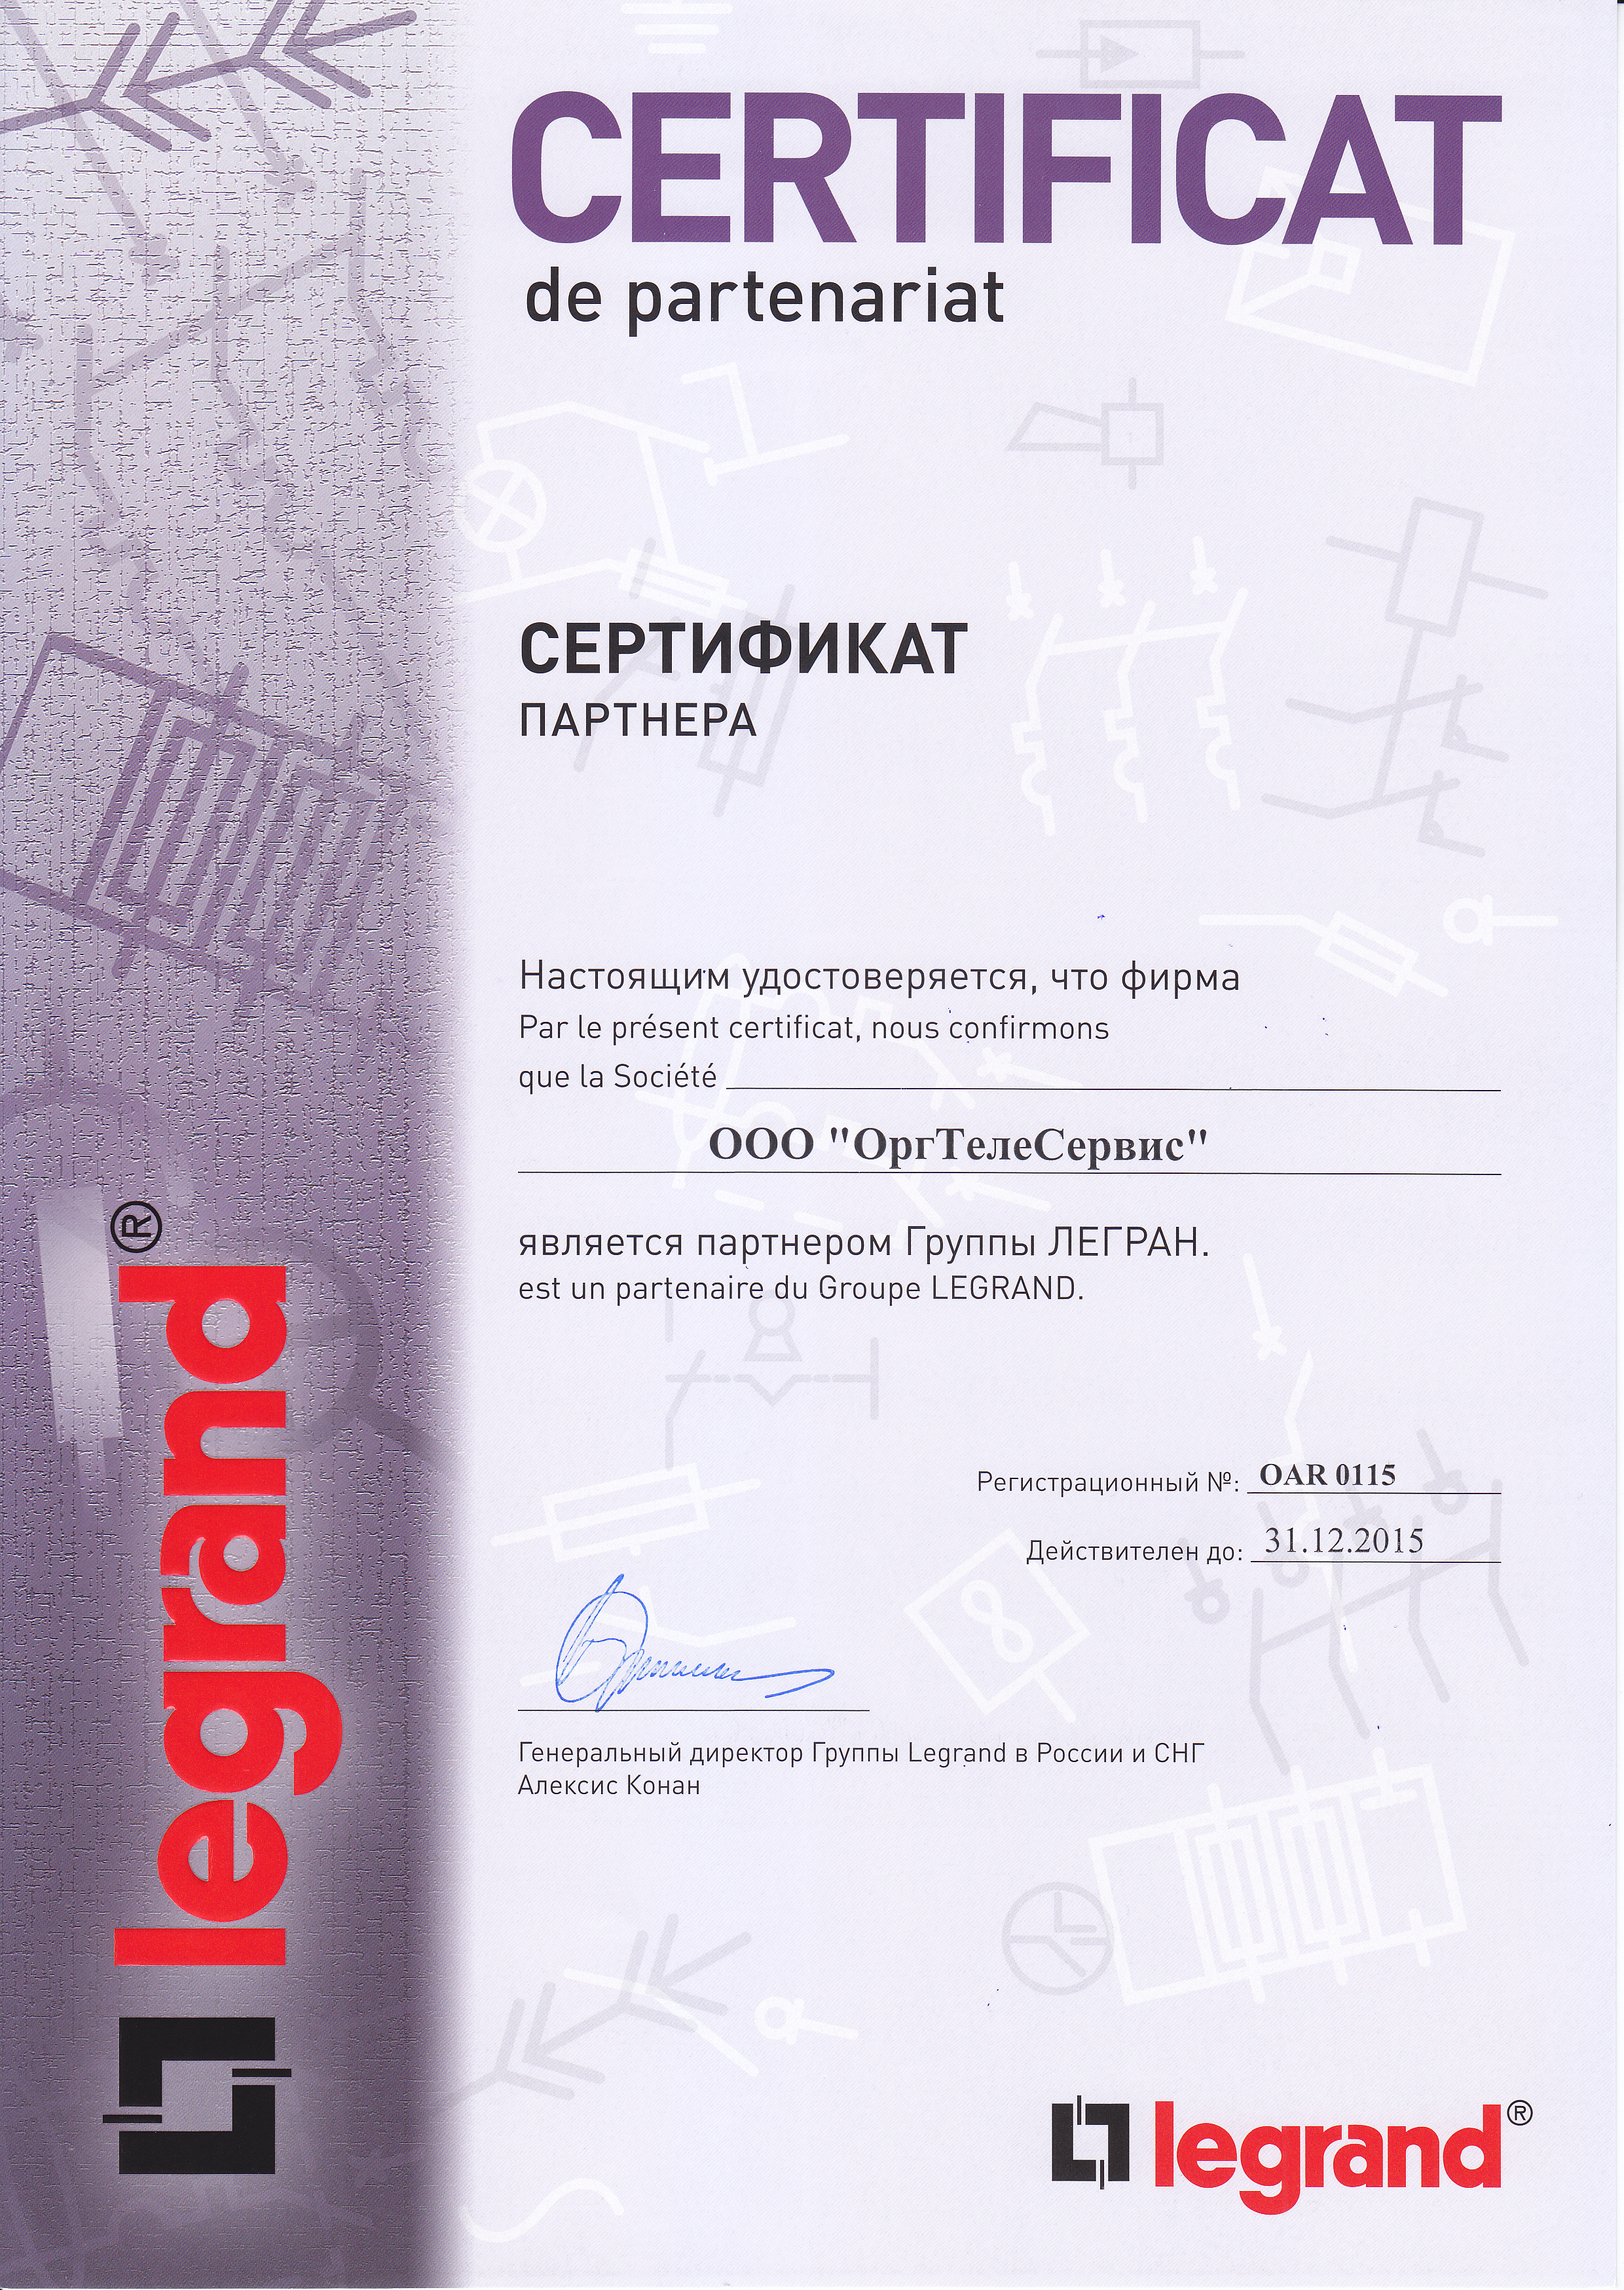 Сертификат партнера Ericsson-LG